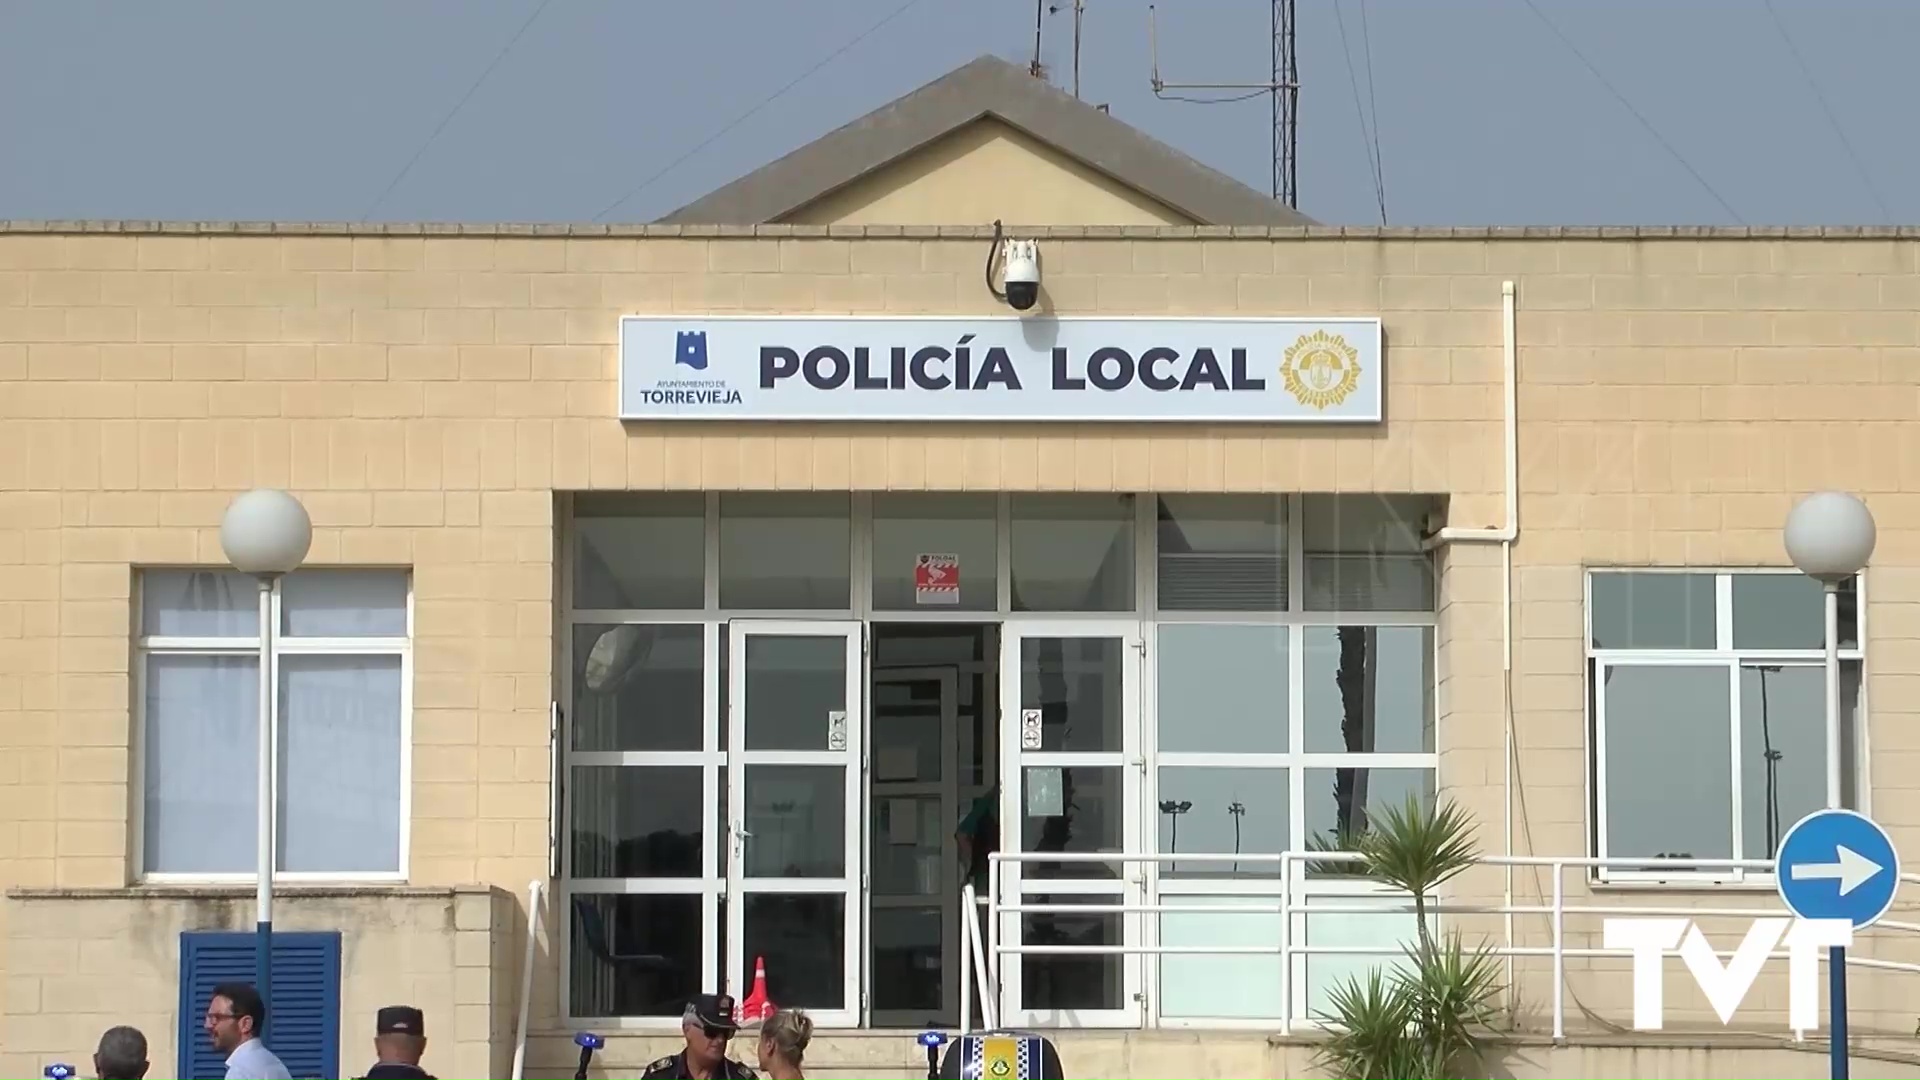 Imagen de El ayuntamiento adquirirá una lancha para la policía local valorada en 100.000 euros 